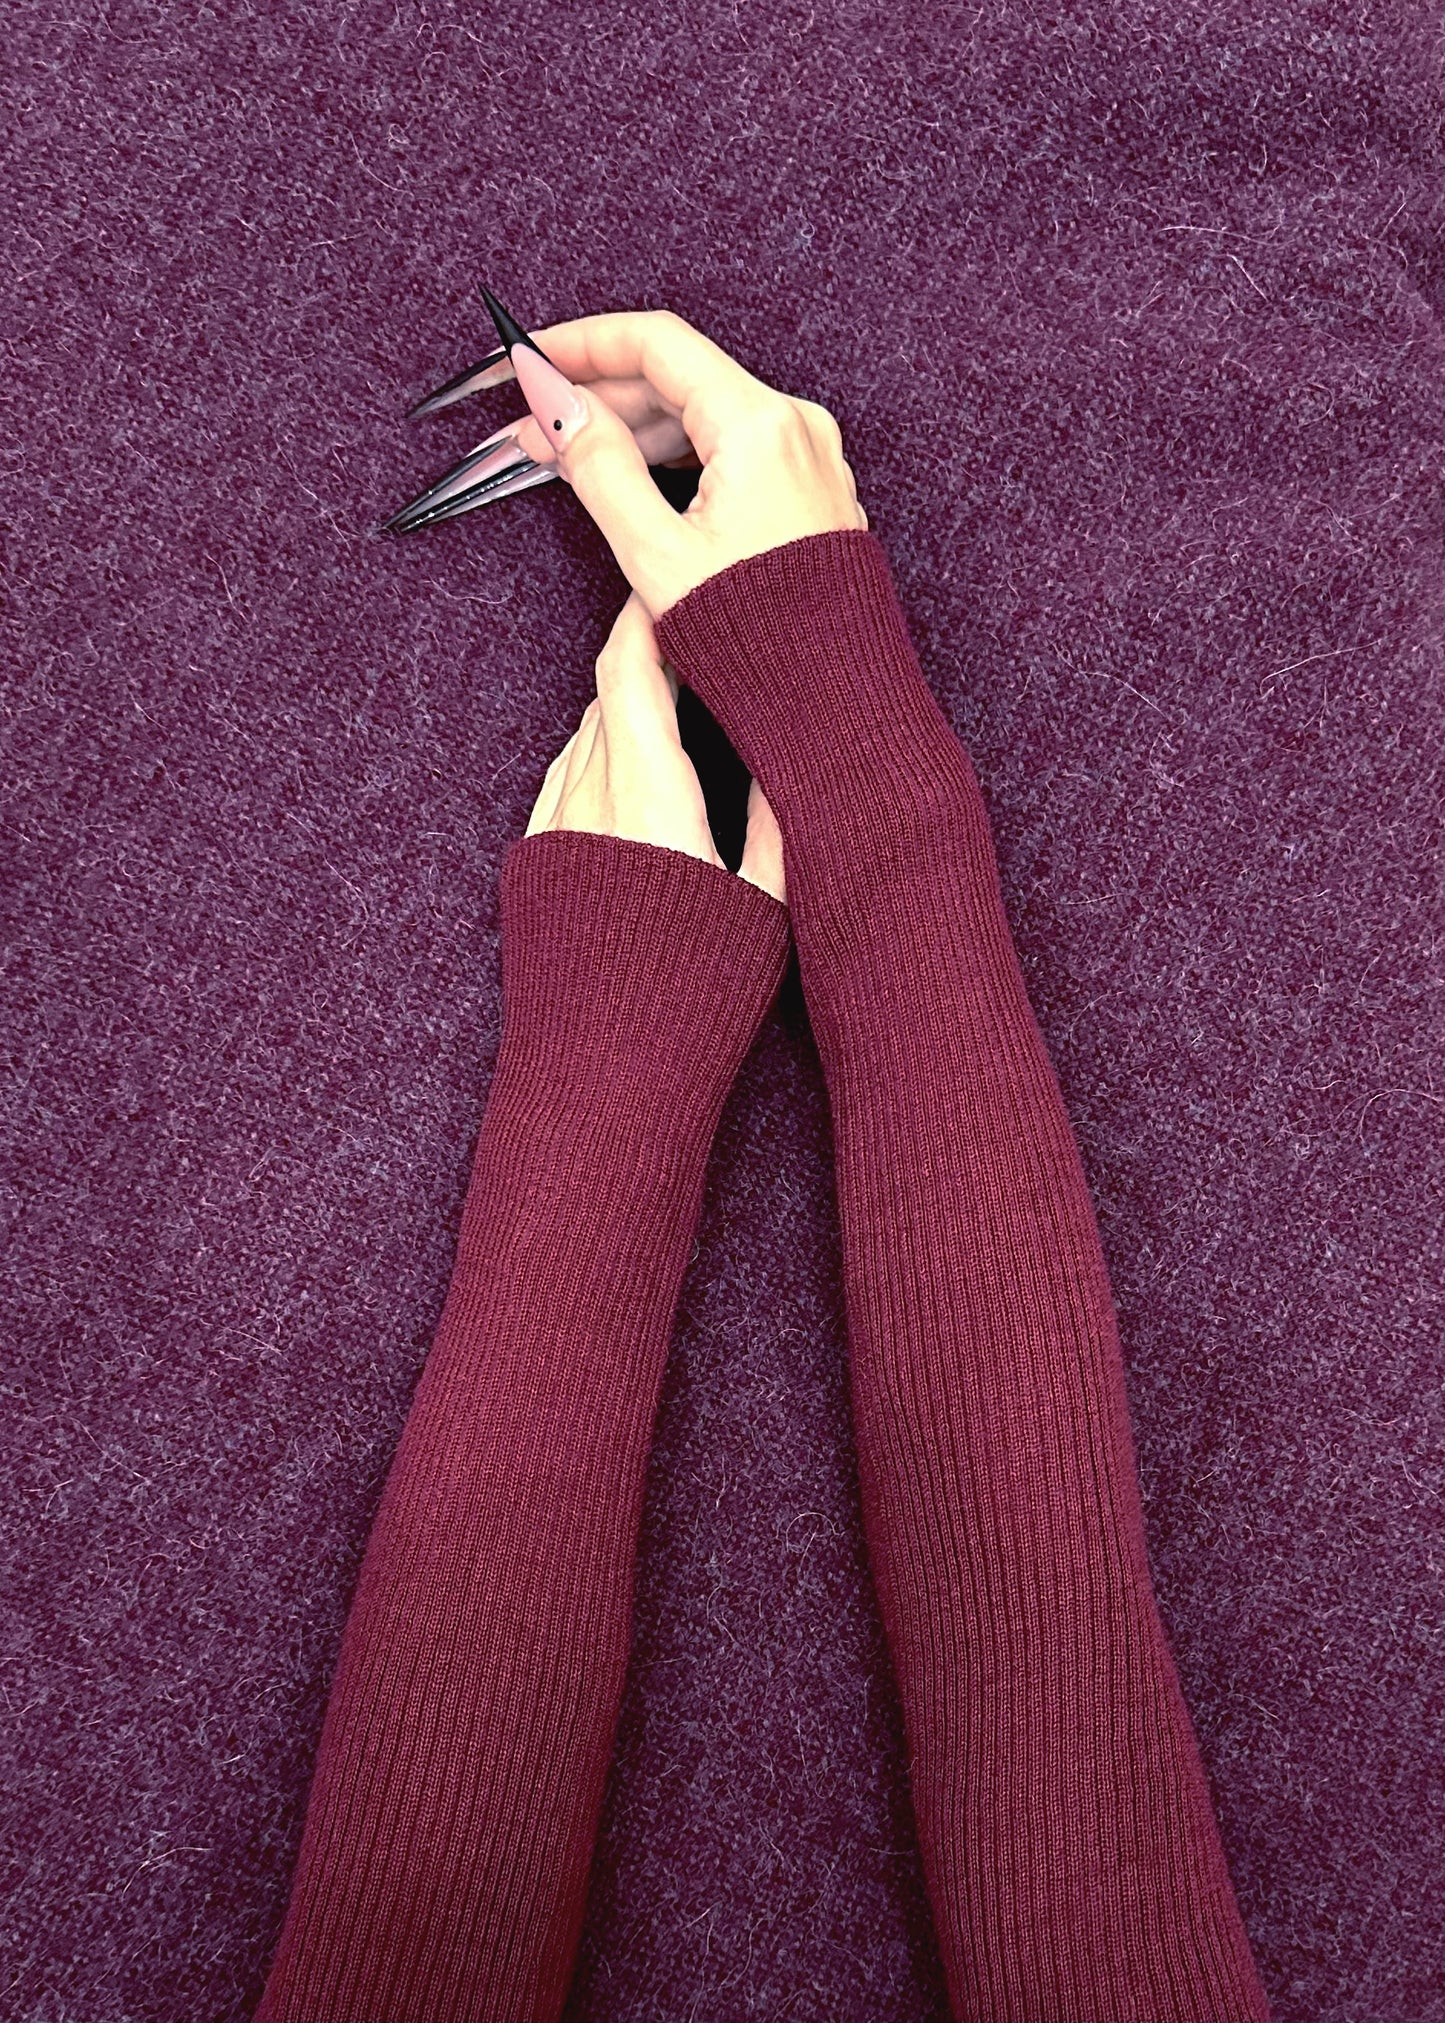 Alligrà • sleeves in burgundy merino wool